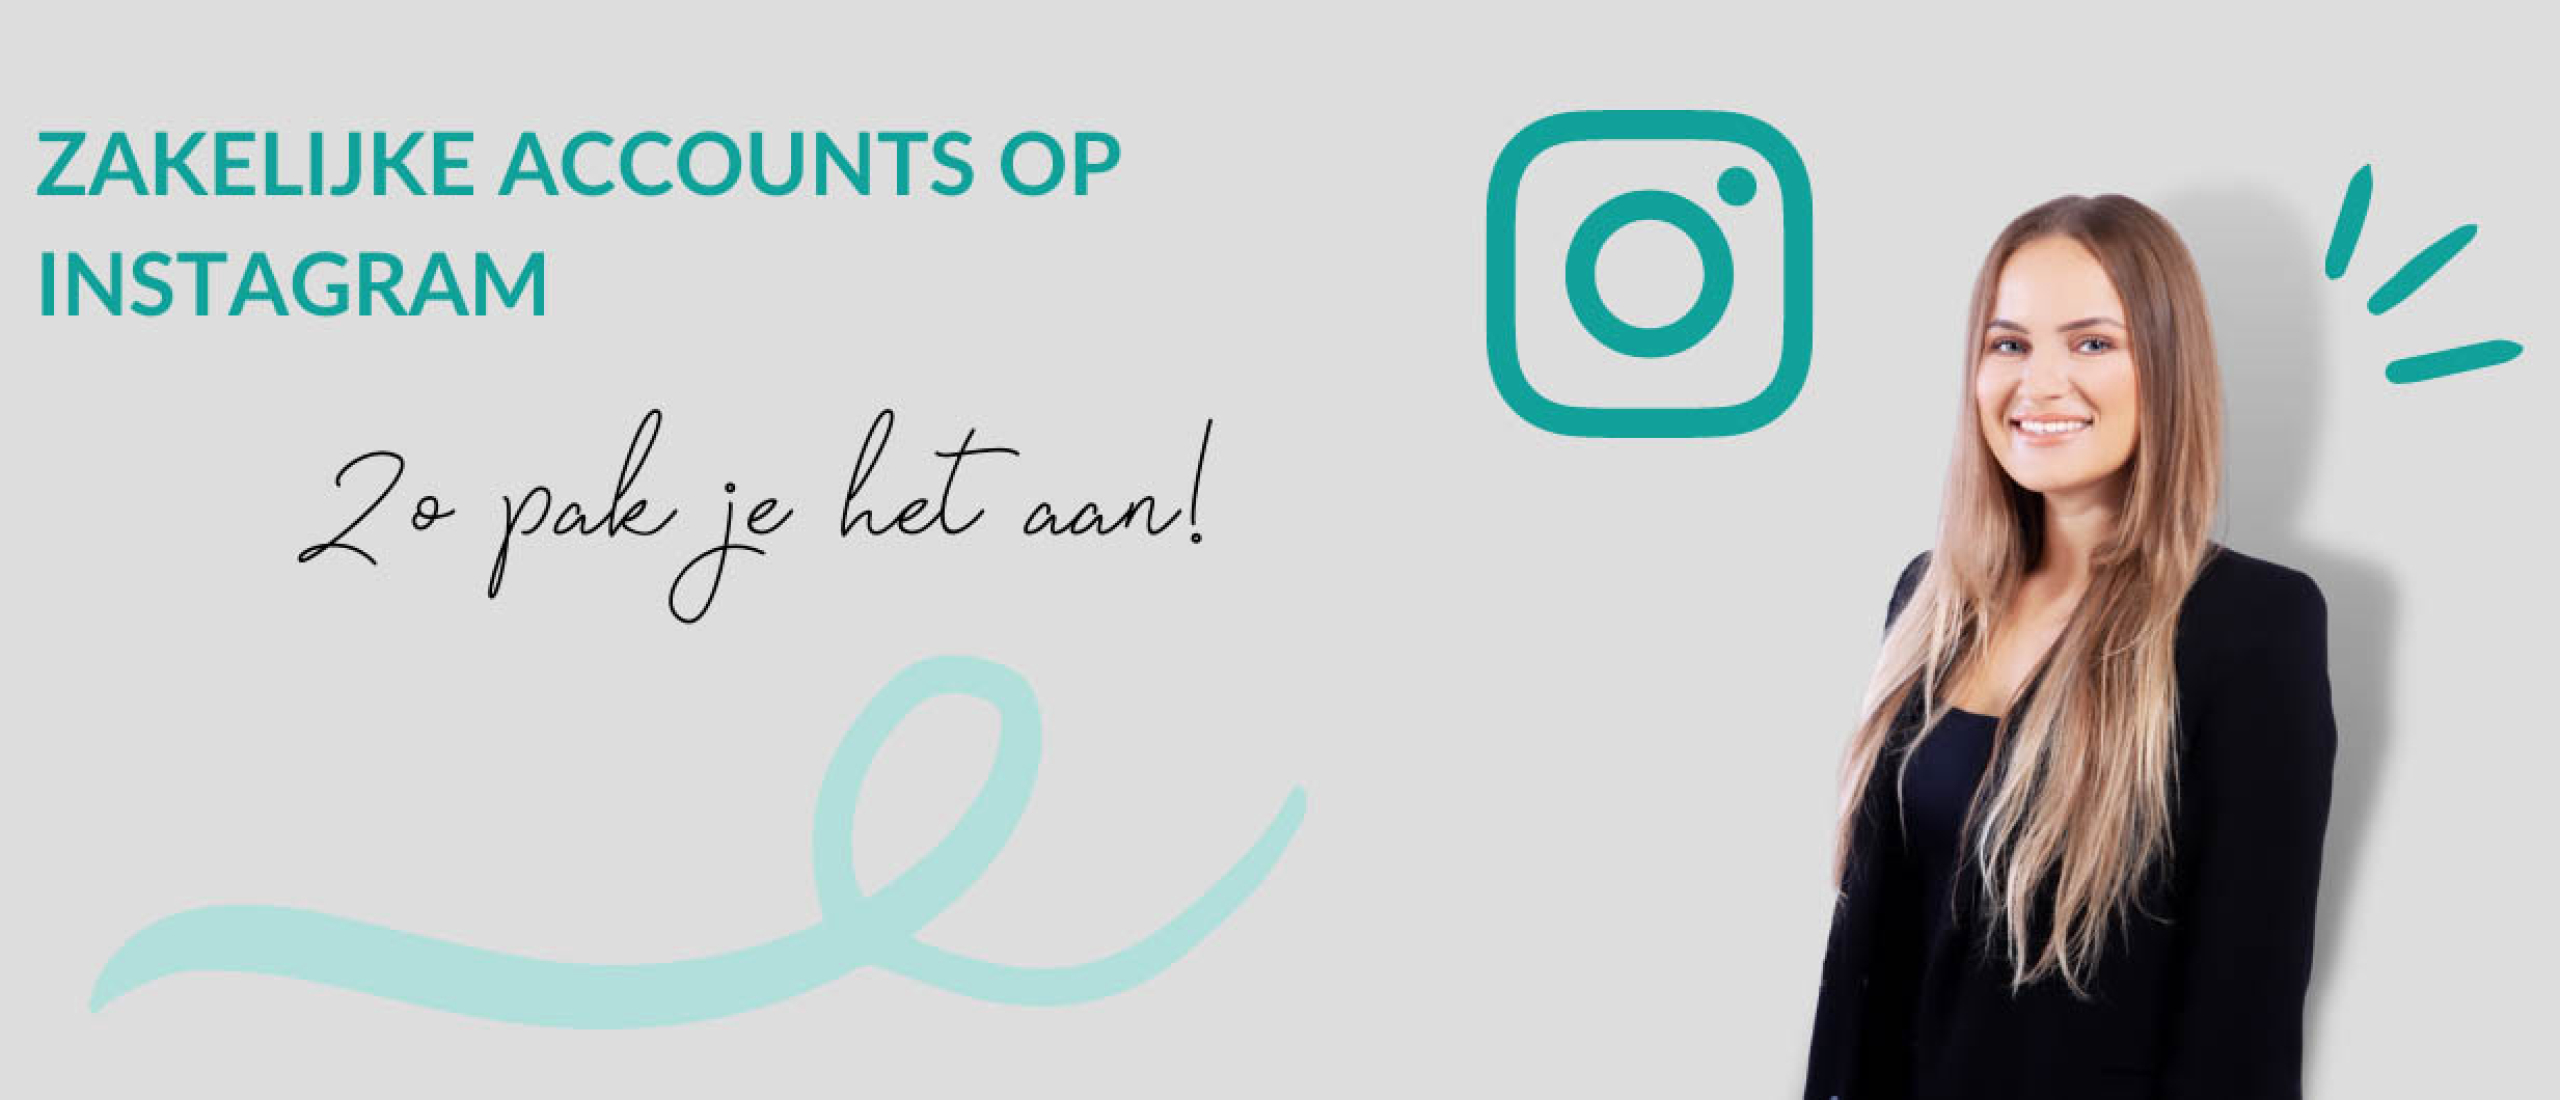 Zakelijke accounts op Instagram: zo pak je het aan!